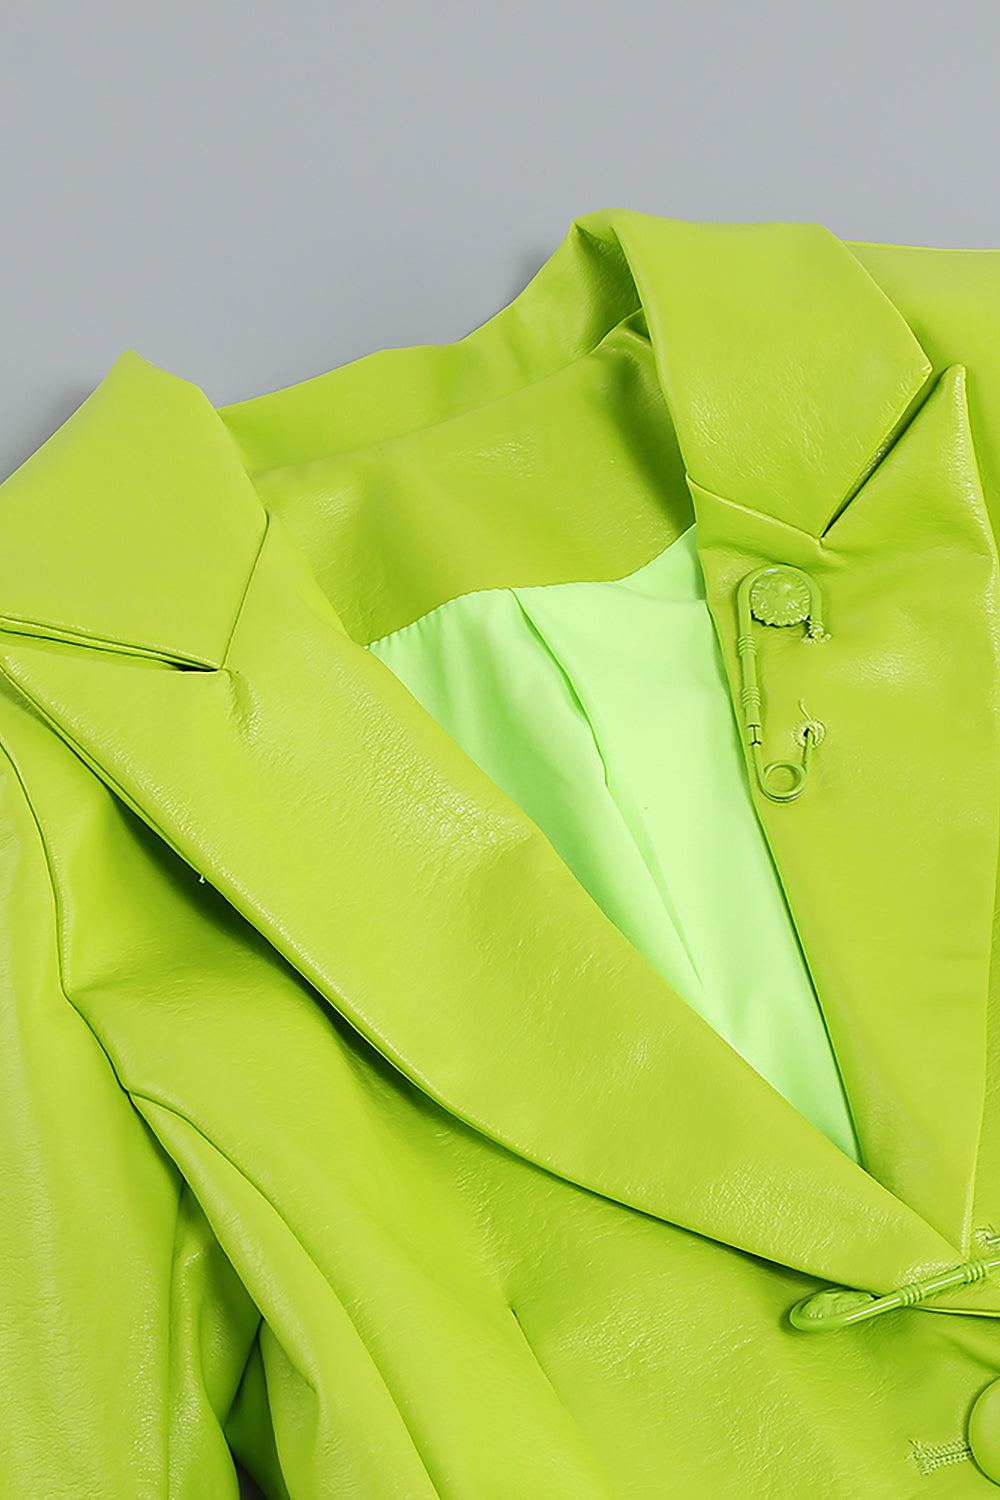 Ensemble veste blazer et jupe en PU, ensemble deux pièces en vert fluorescent